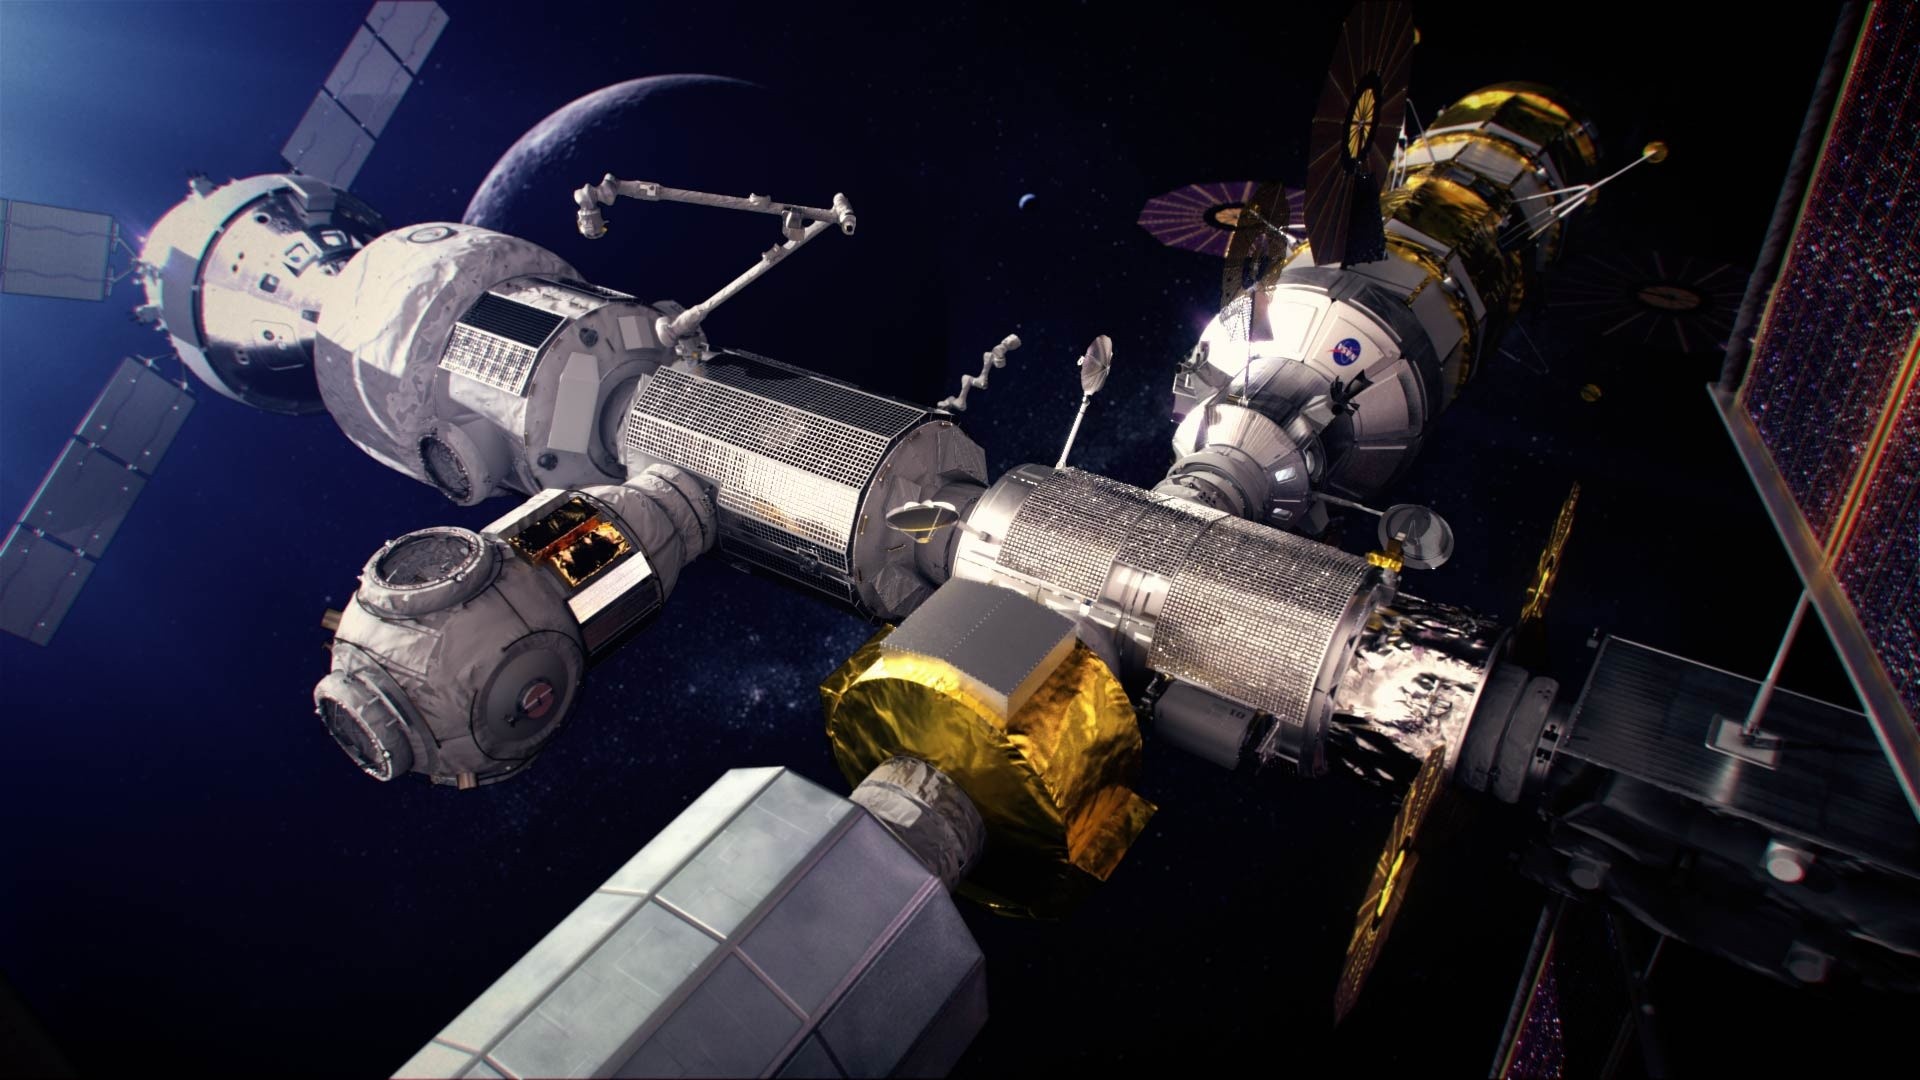 O Canadá é responsável pela construção de um braço robótico articulado — o Canadarm3 —, que fará parte da infraestrutura da estação espacial em órbita lunar a ser instalada pela agência norte-americana no satélite, a Lunar Gateway (Foto: Canadian Space Agency, NASA)